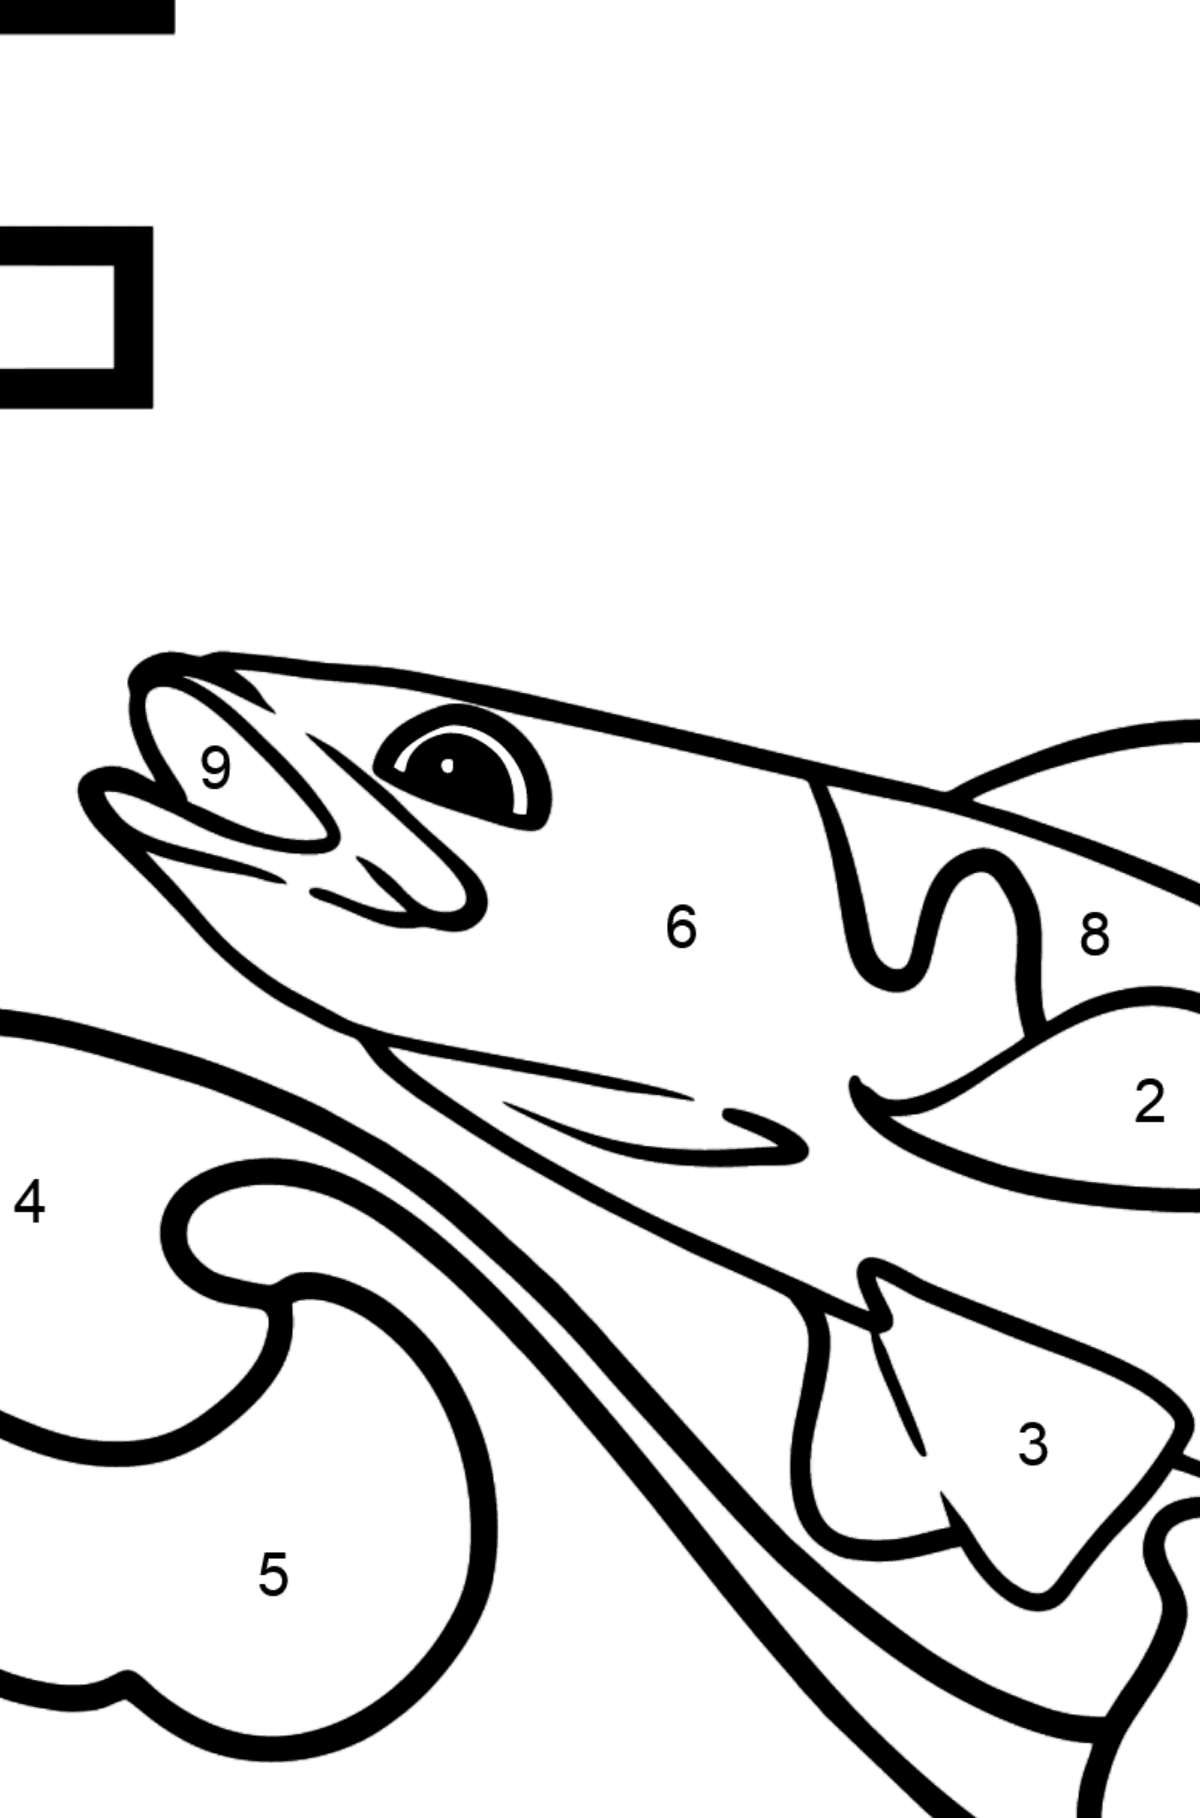 Dibujo de Letra F inglesa para colorear - FISH - Colorear por Números para Niños